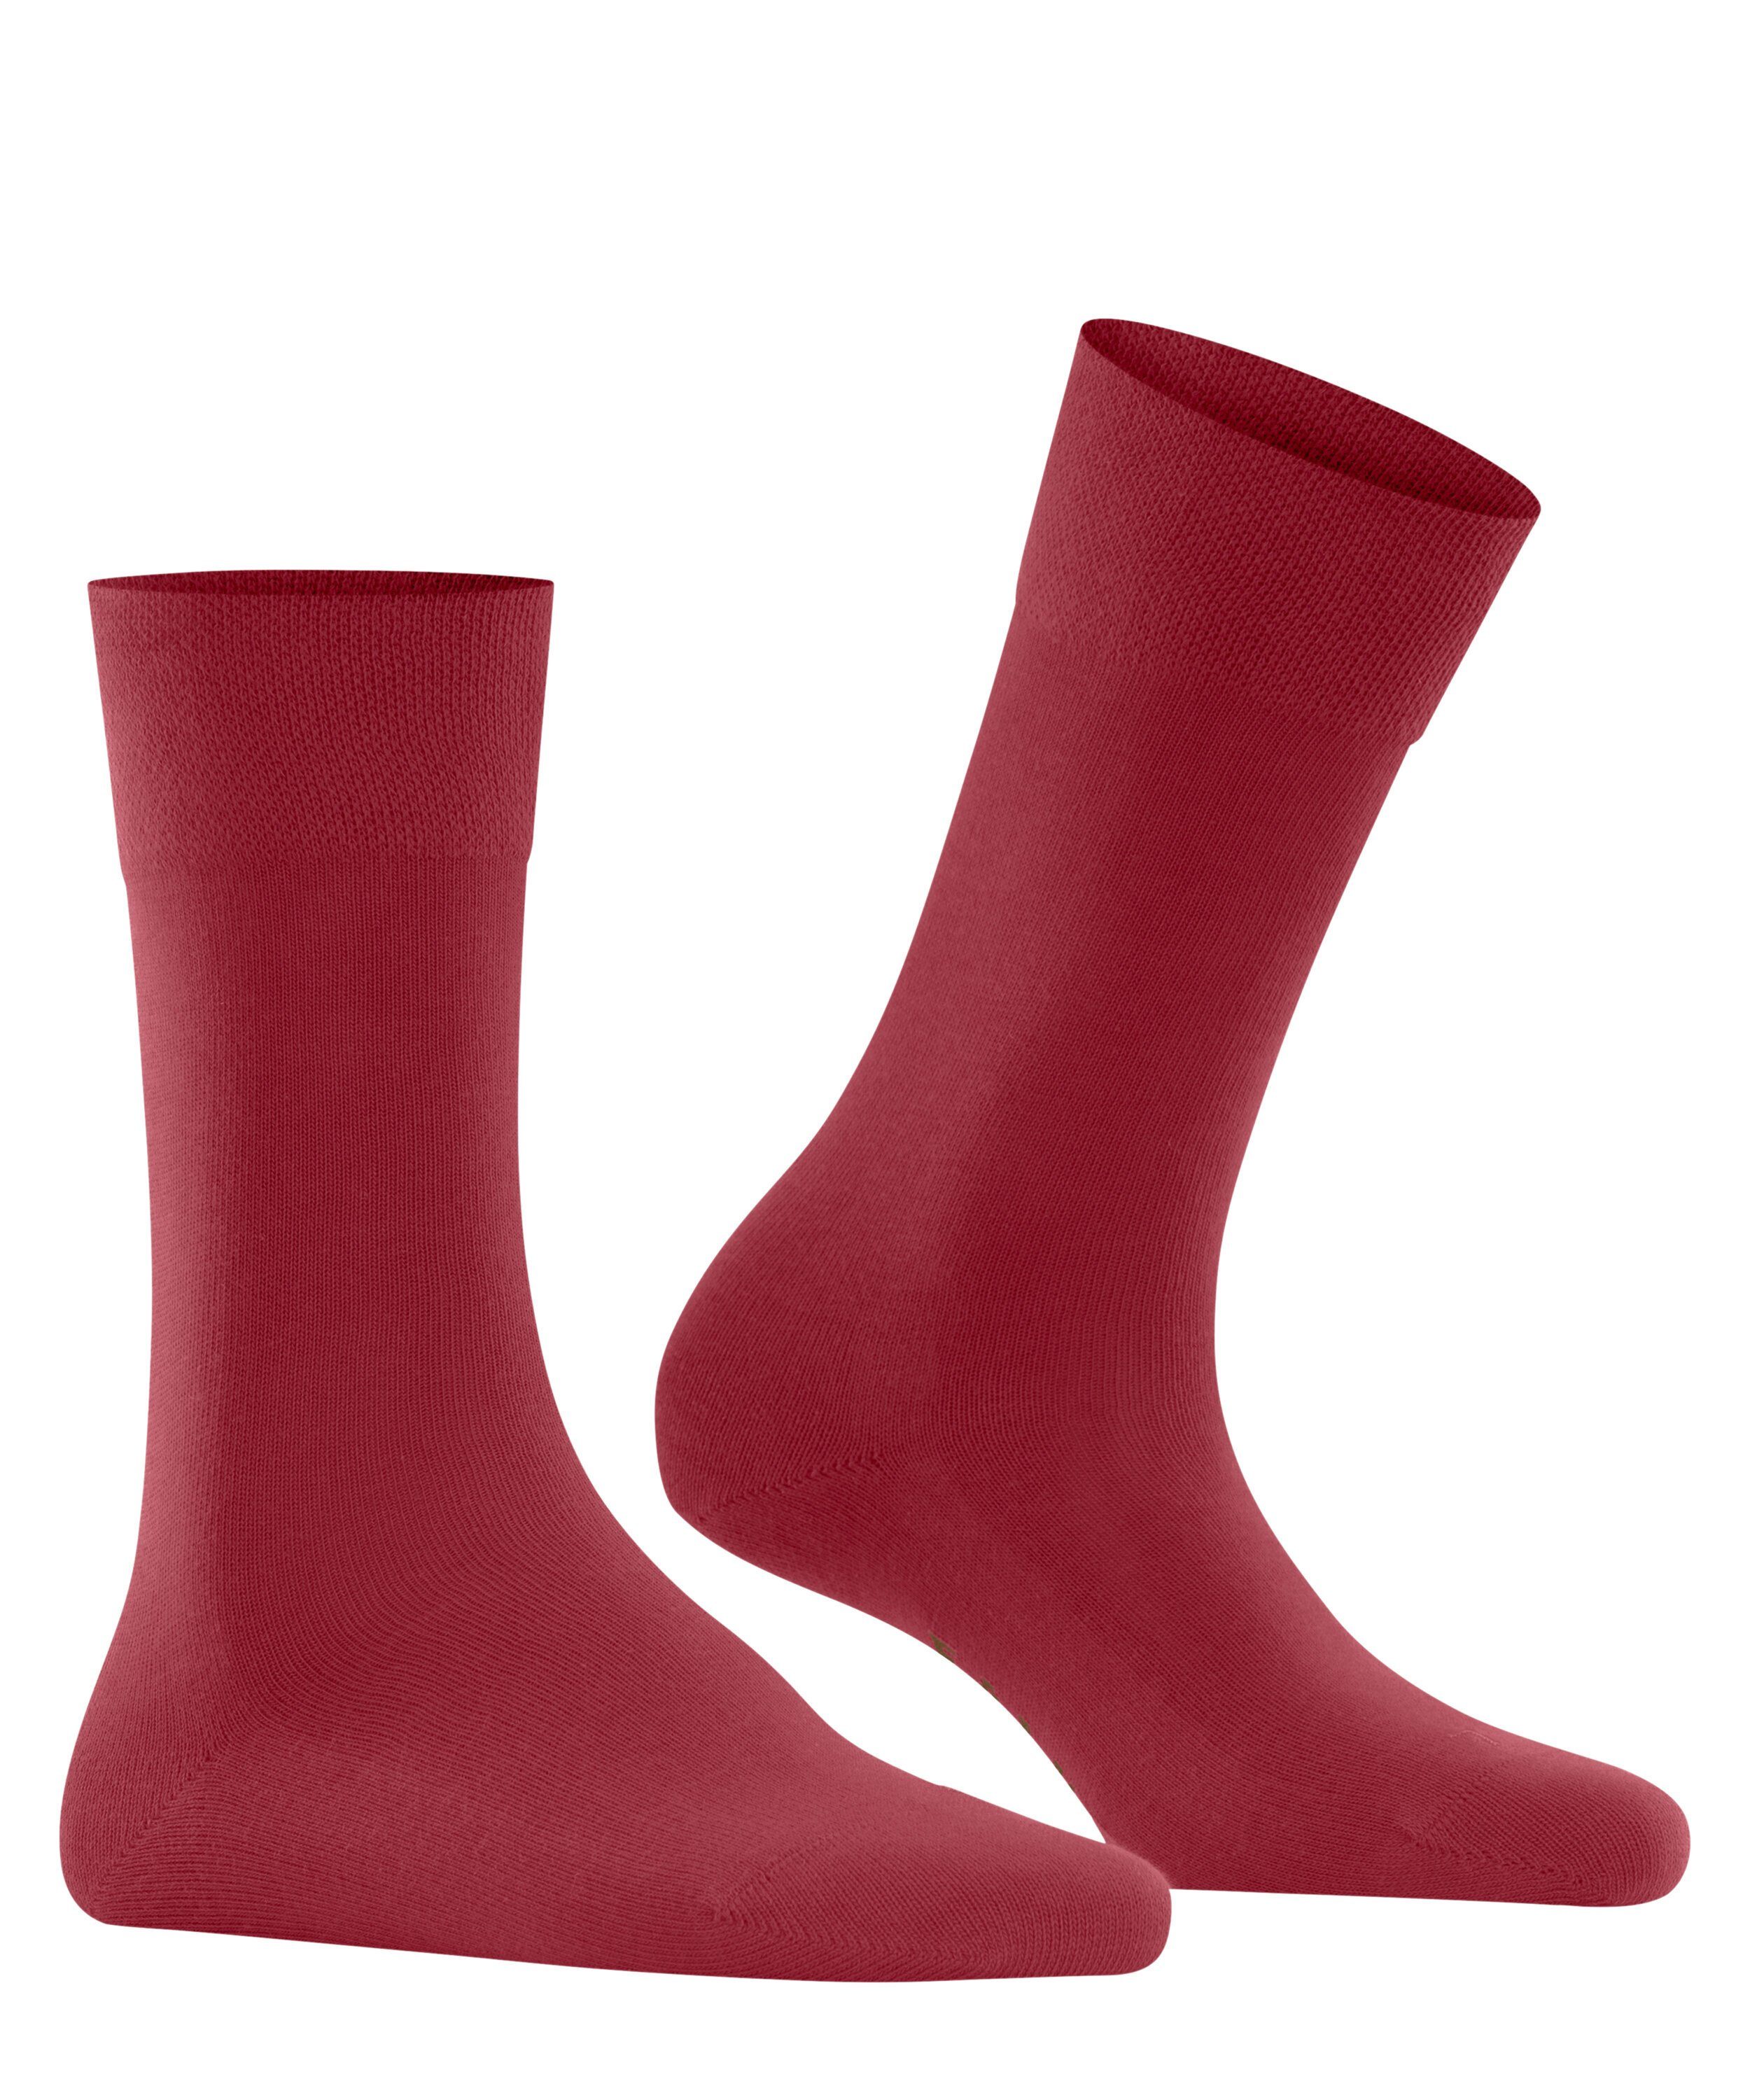 London FALKE Socken scarlet Sensitive (8228) (1-Paar)